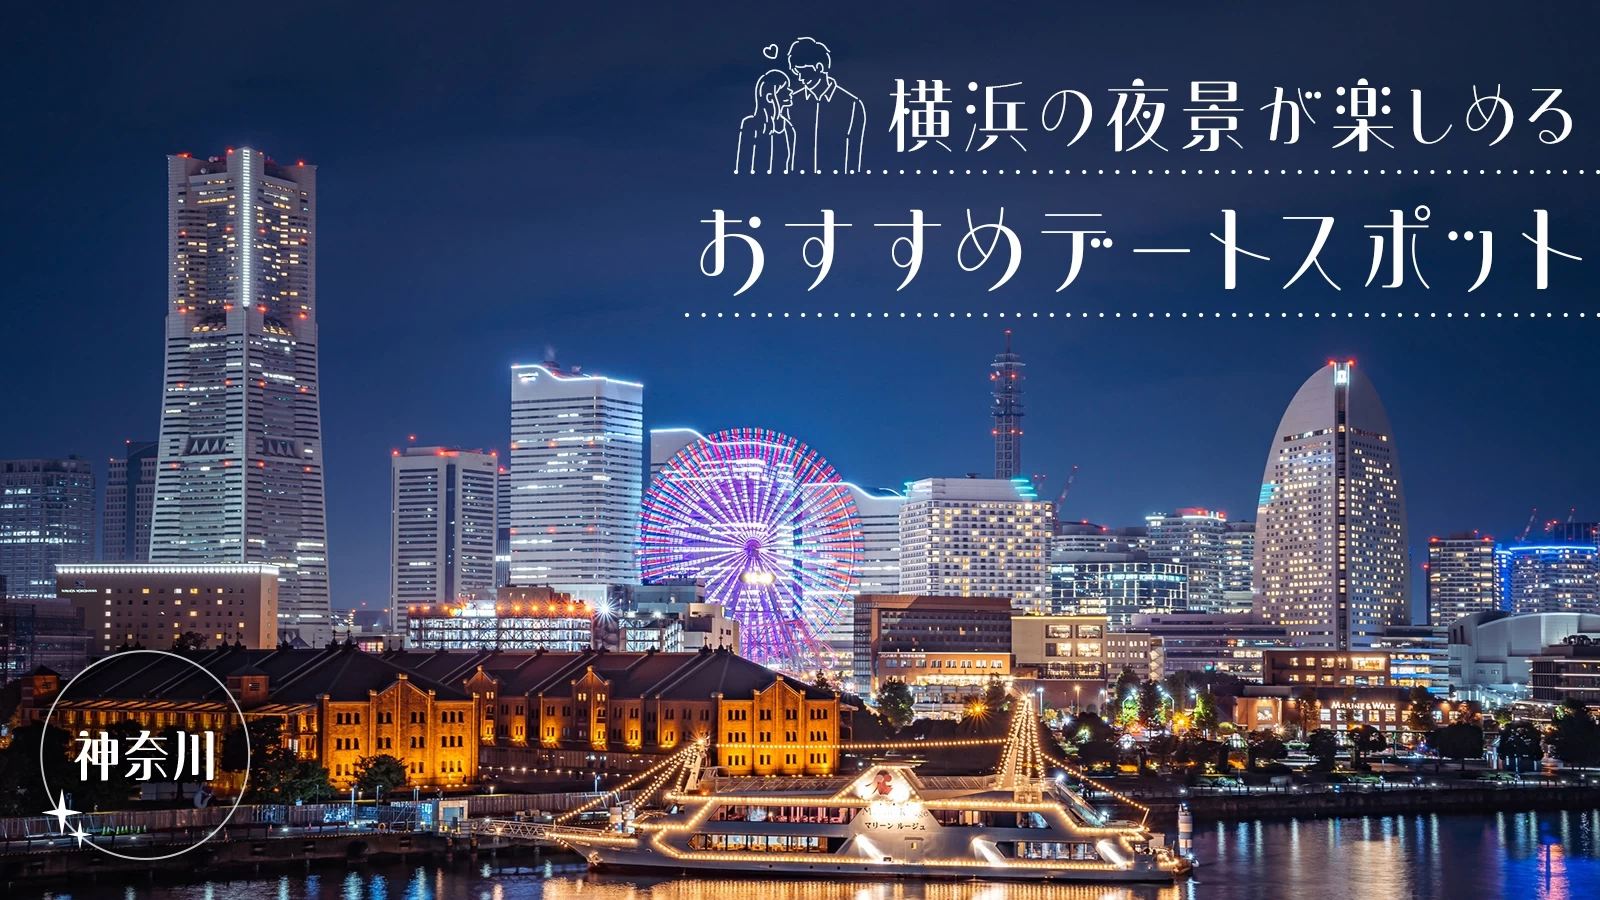 【神奈川観光】横浜の夜景が楽しめるおすすめデートスポット12選